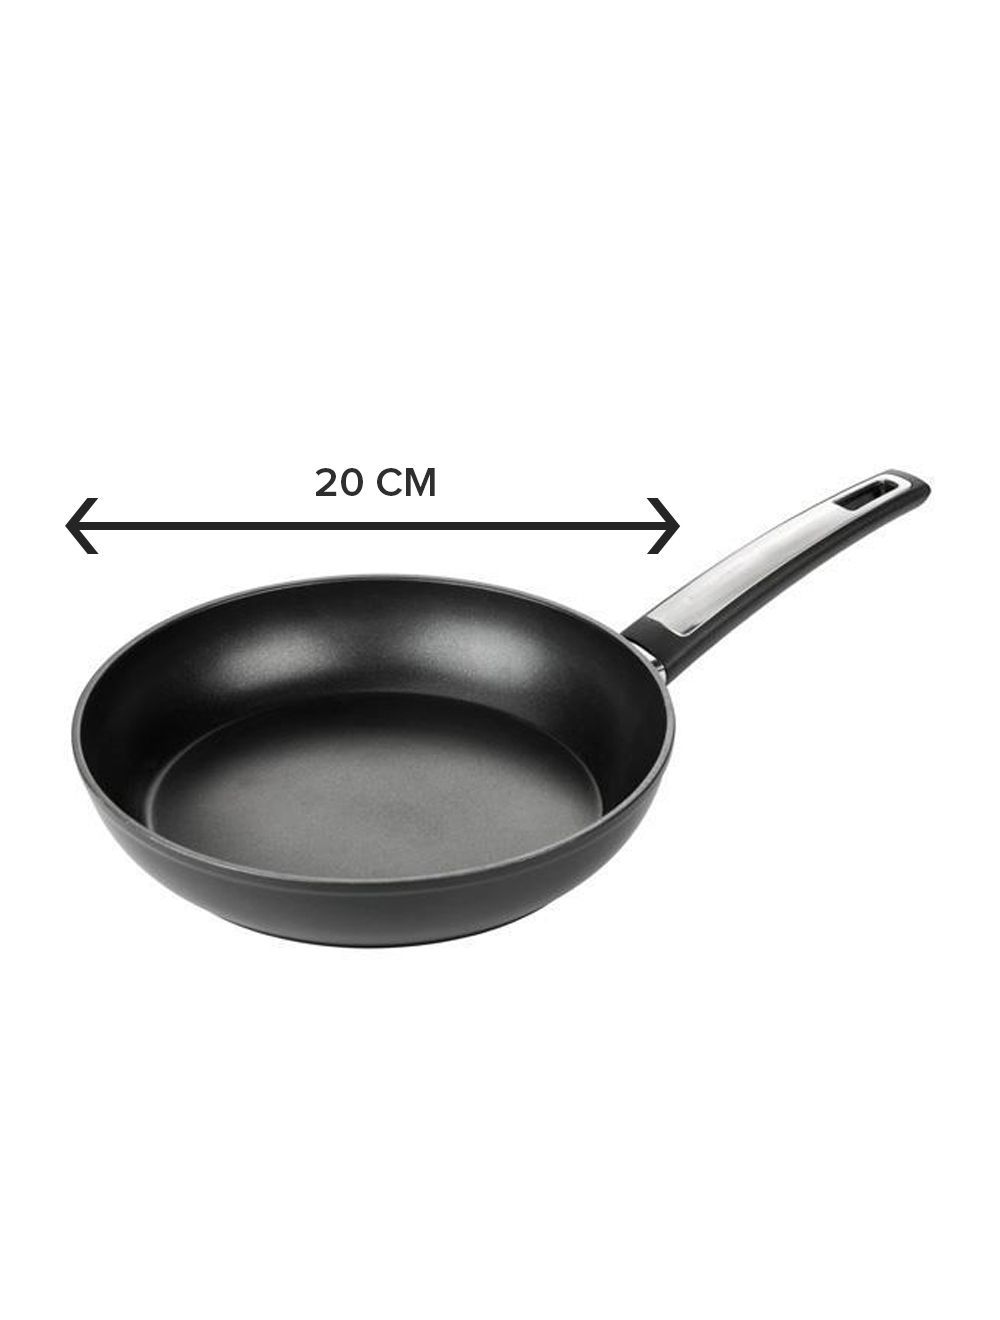 Tescoma Frying Pan Premium 20cm